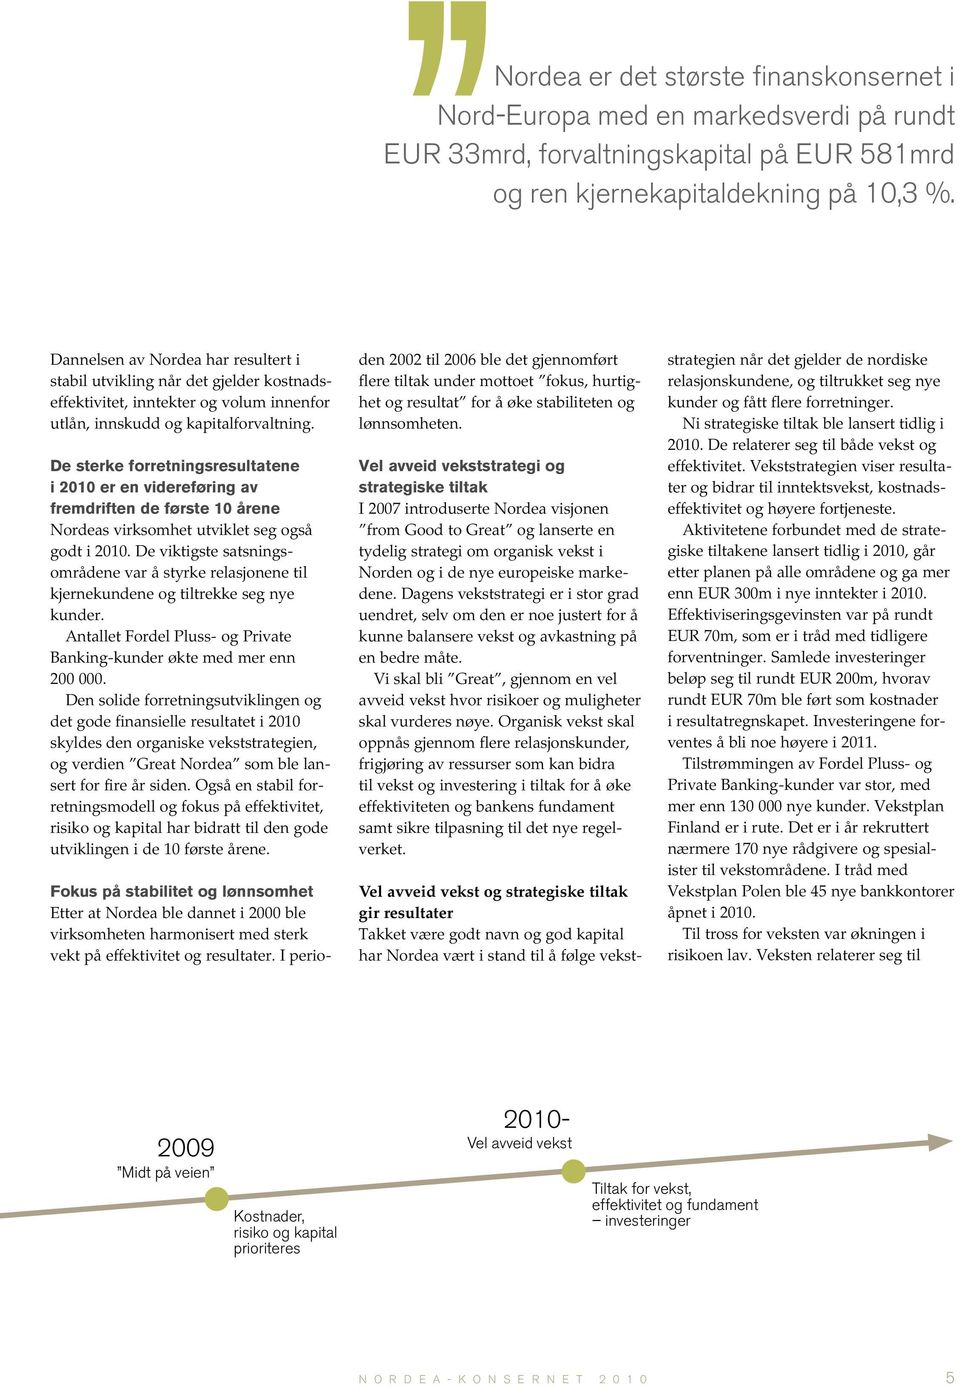 De sterke forretningsresultatene i 2010 er en videreføring av fremdriften de første 10 årene Nordeas virksomhet utviklet seg også godt i 2010.